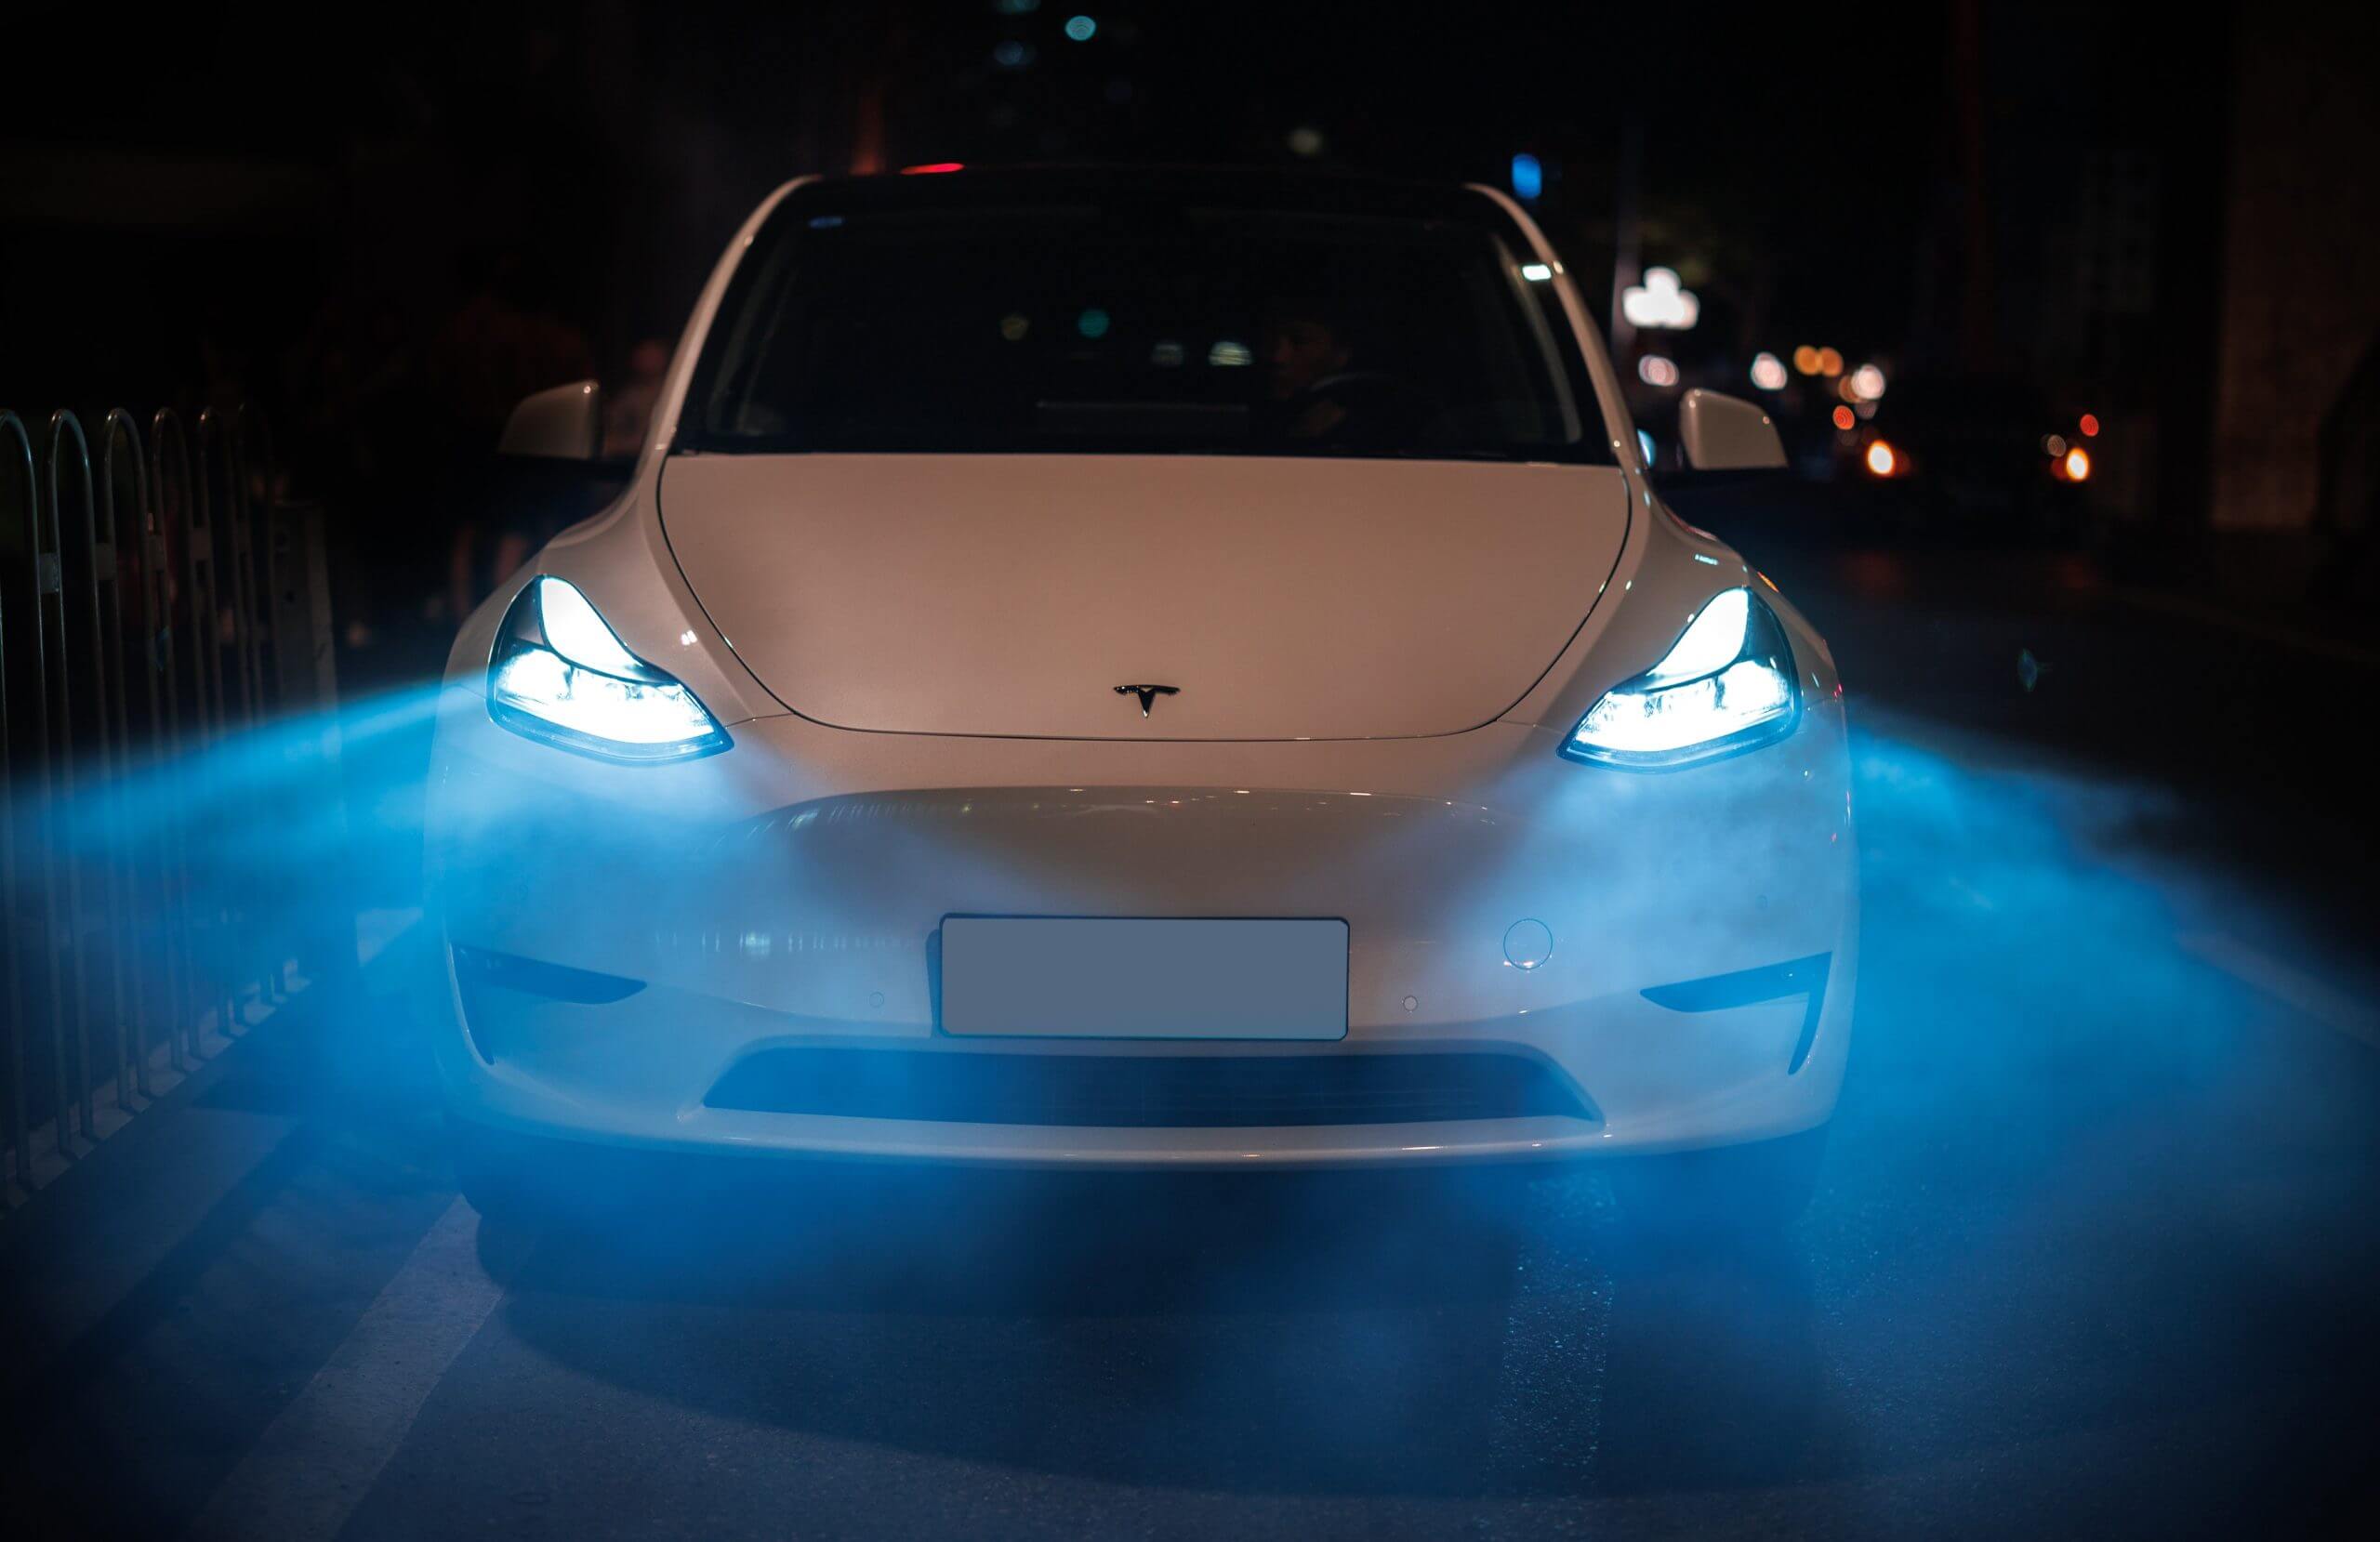 Elon Musk chiarisce le segnalazioni di radar nella Tesla Model Ys in Cina